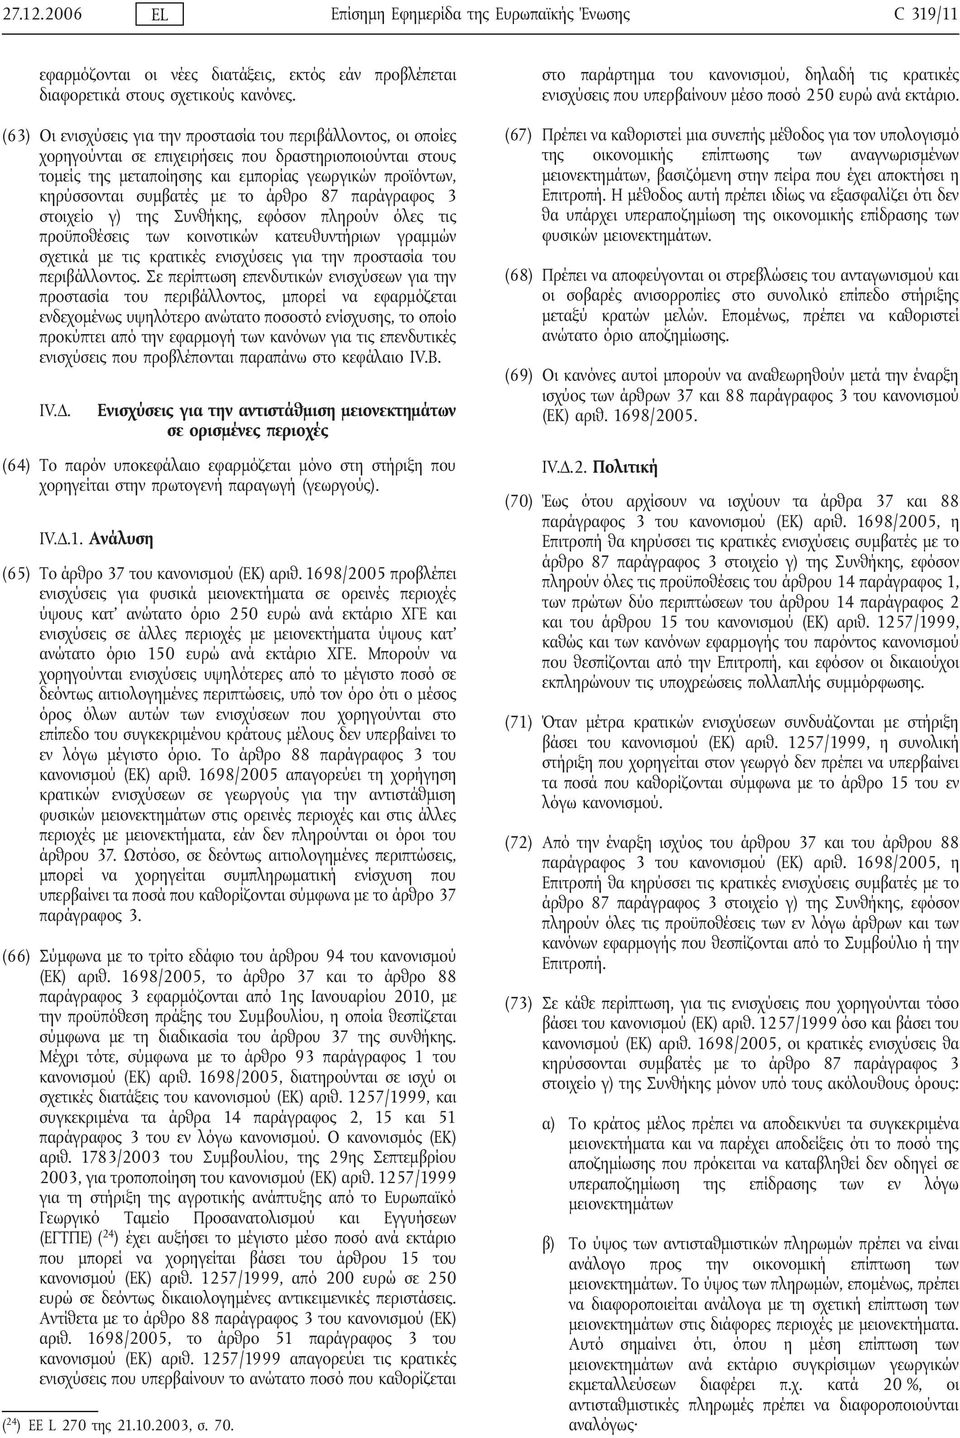 συμβατές με το άρθρο 87 παράγραφος 3 στοιχείο γ) της Συνθήκης, εφόσον πληρούν όλες τις προϋποθέσεις των κοινοτικών κατευθυντήριων γραμμών σχετικά με τις κρατικές ενισχύσεις για την προστασία του